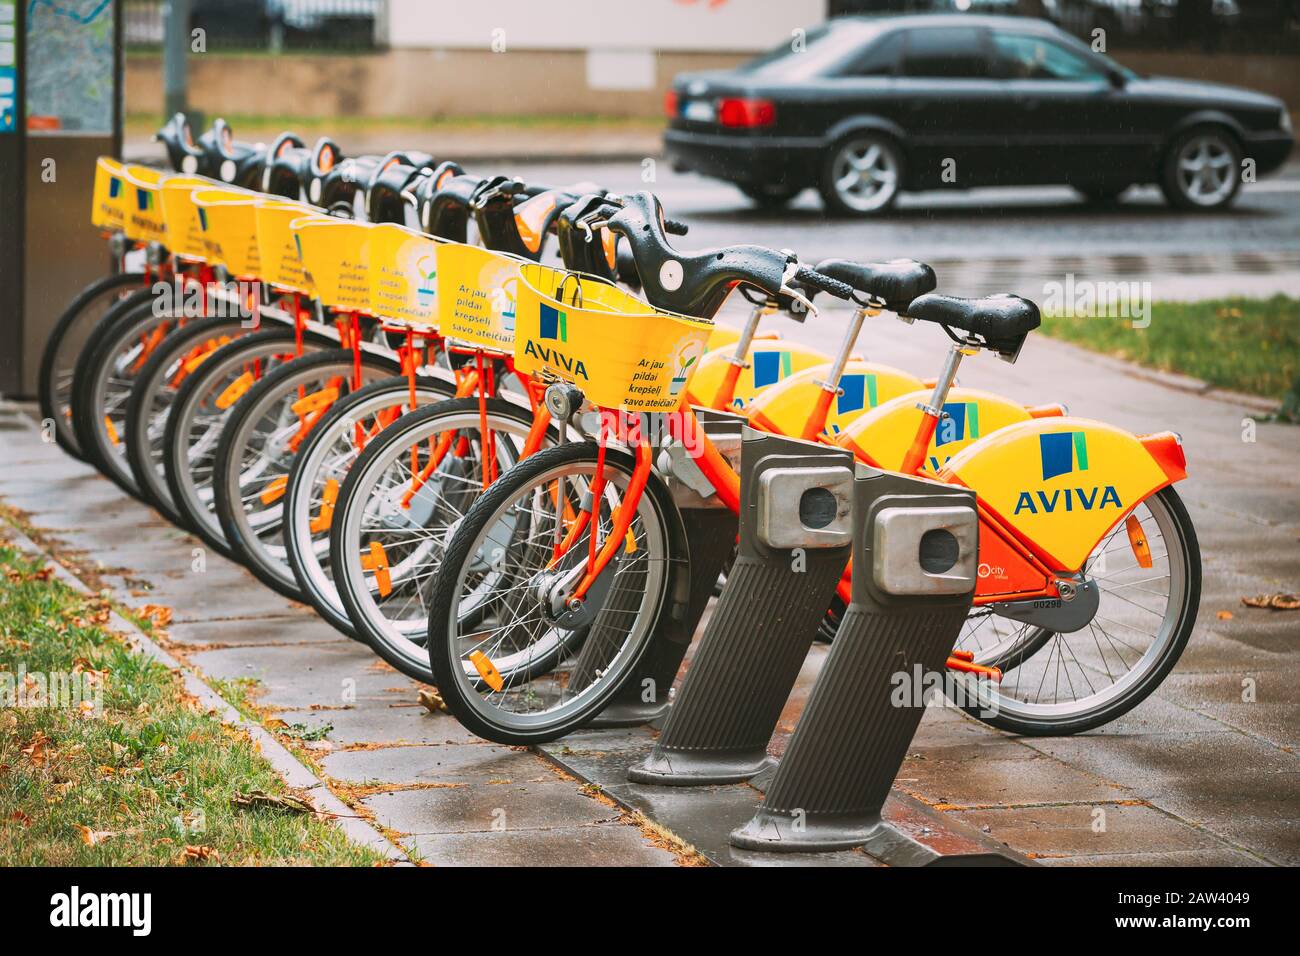 Vilnius, Litauen - 5. Juli 2016: Reihe von bunten Fahrräder AVIVA zu vermieten am städtischen Fahrrad-Parken In der Straße. Sommertag nach Regen Stockfoto